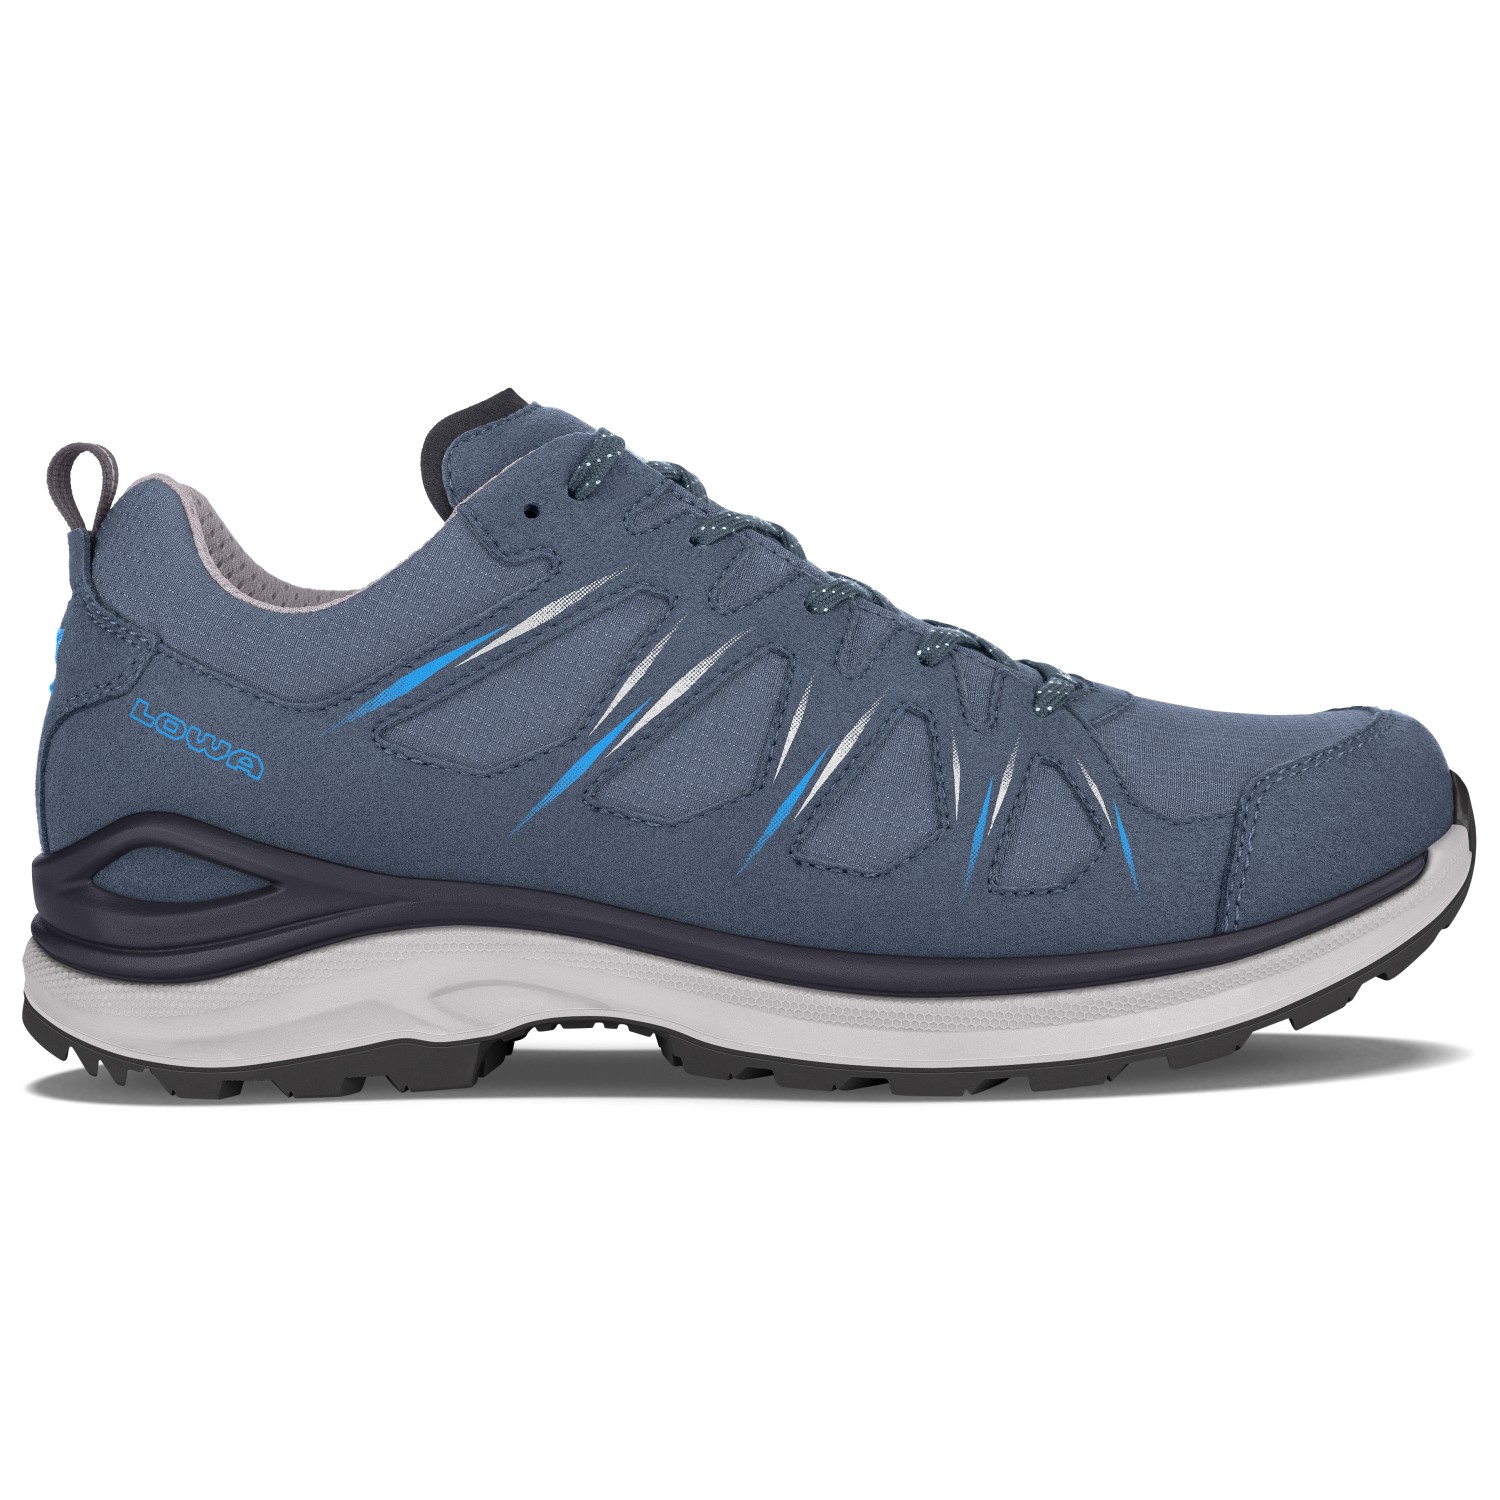 Мультиспортивная обувь Lowa Innox Evo II GTX, цвет Steel Blue/Ocean